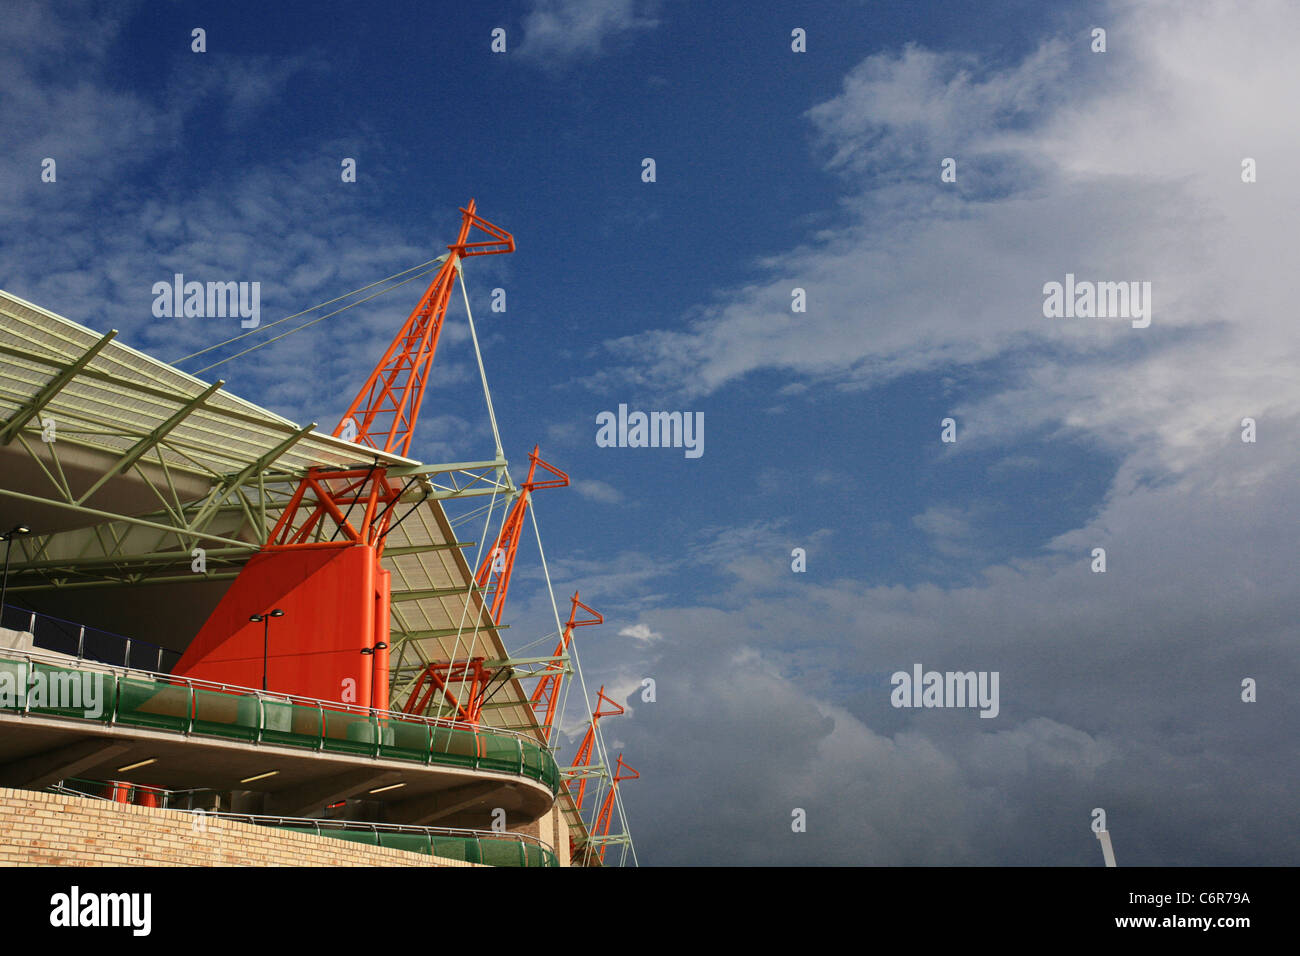 Vista diurna de la jirafa naranja característica del diseño del Mbombela Stadium Foto de stock